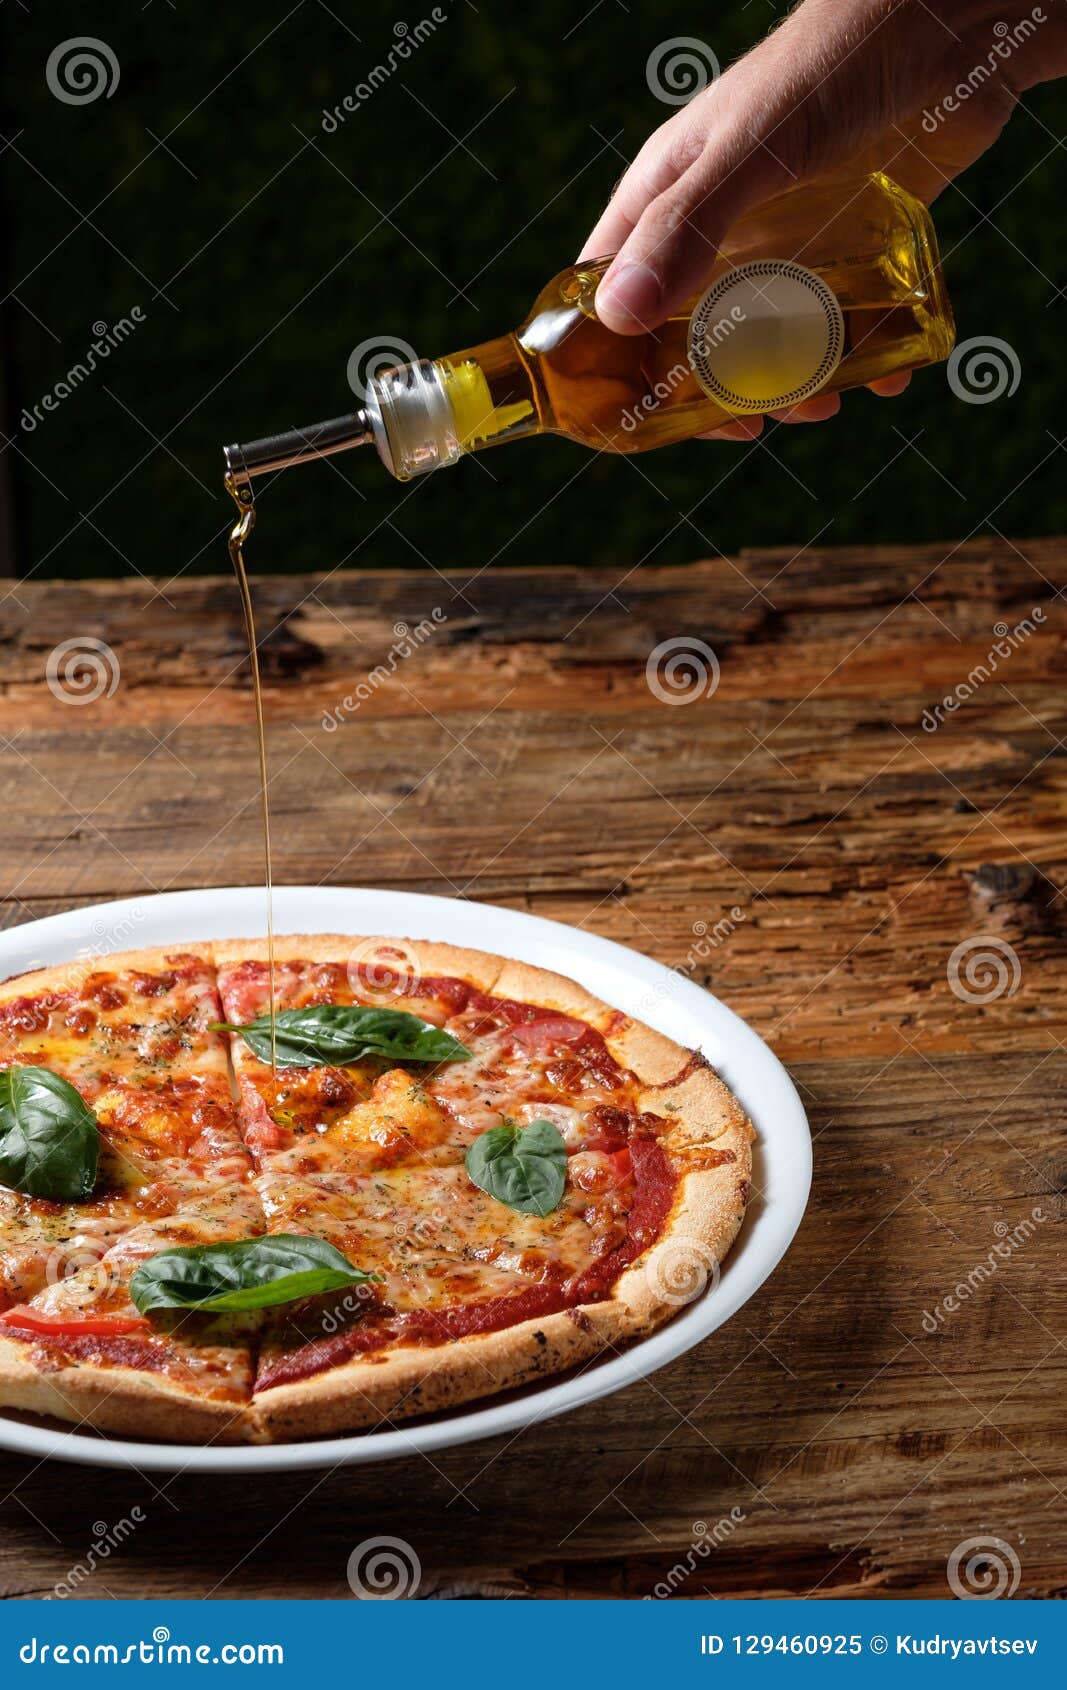 чесночное масло для пиццы рецепт фото 107